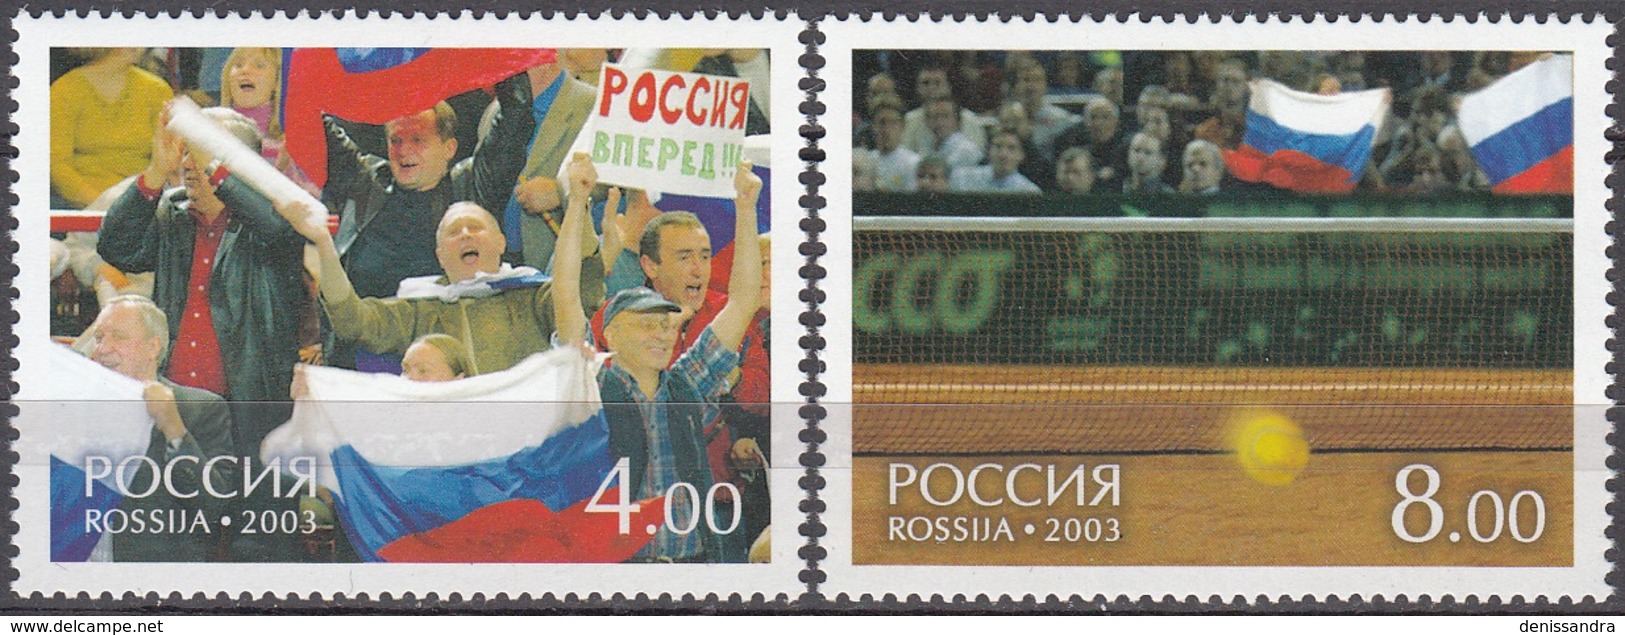 Rossija 2003 Michel 1061 - 1062 Neuf ** Cote (2008) 2.00 Euro Coupe Davis Tennis - Ungebraucht